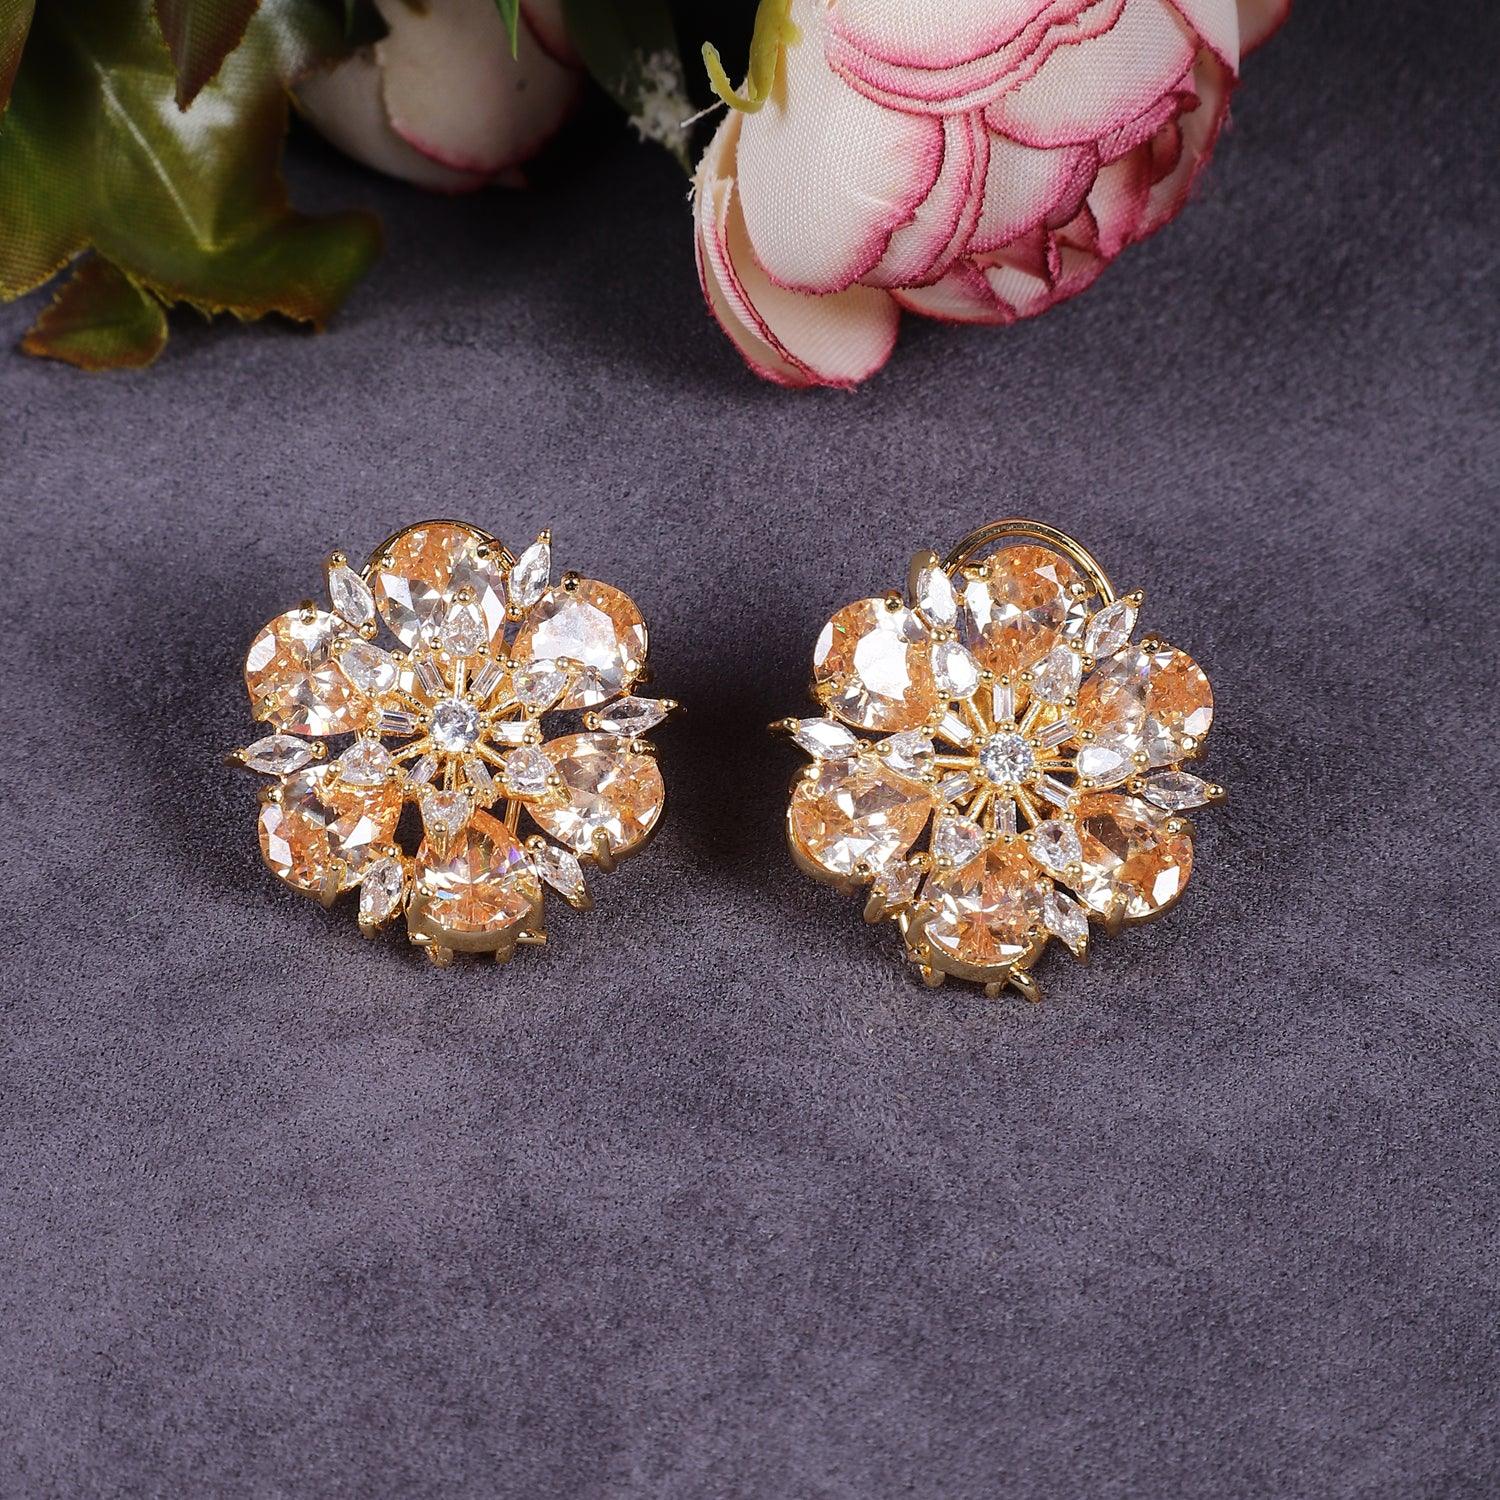 Designer Style Golden Stone American Diamond Studs Earrings for Women - Steorra Jewels